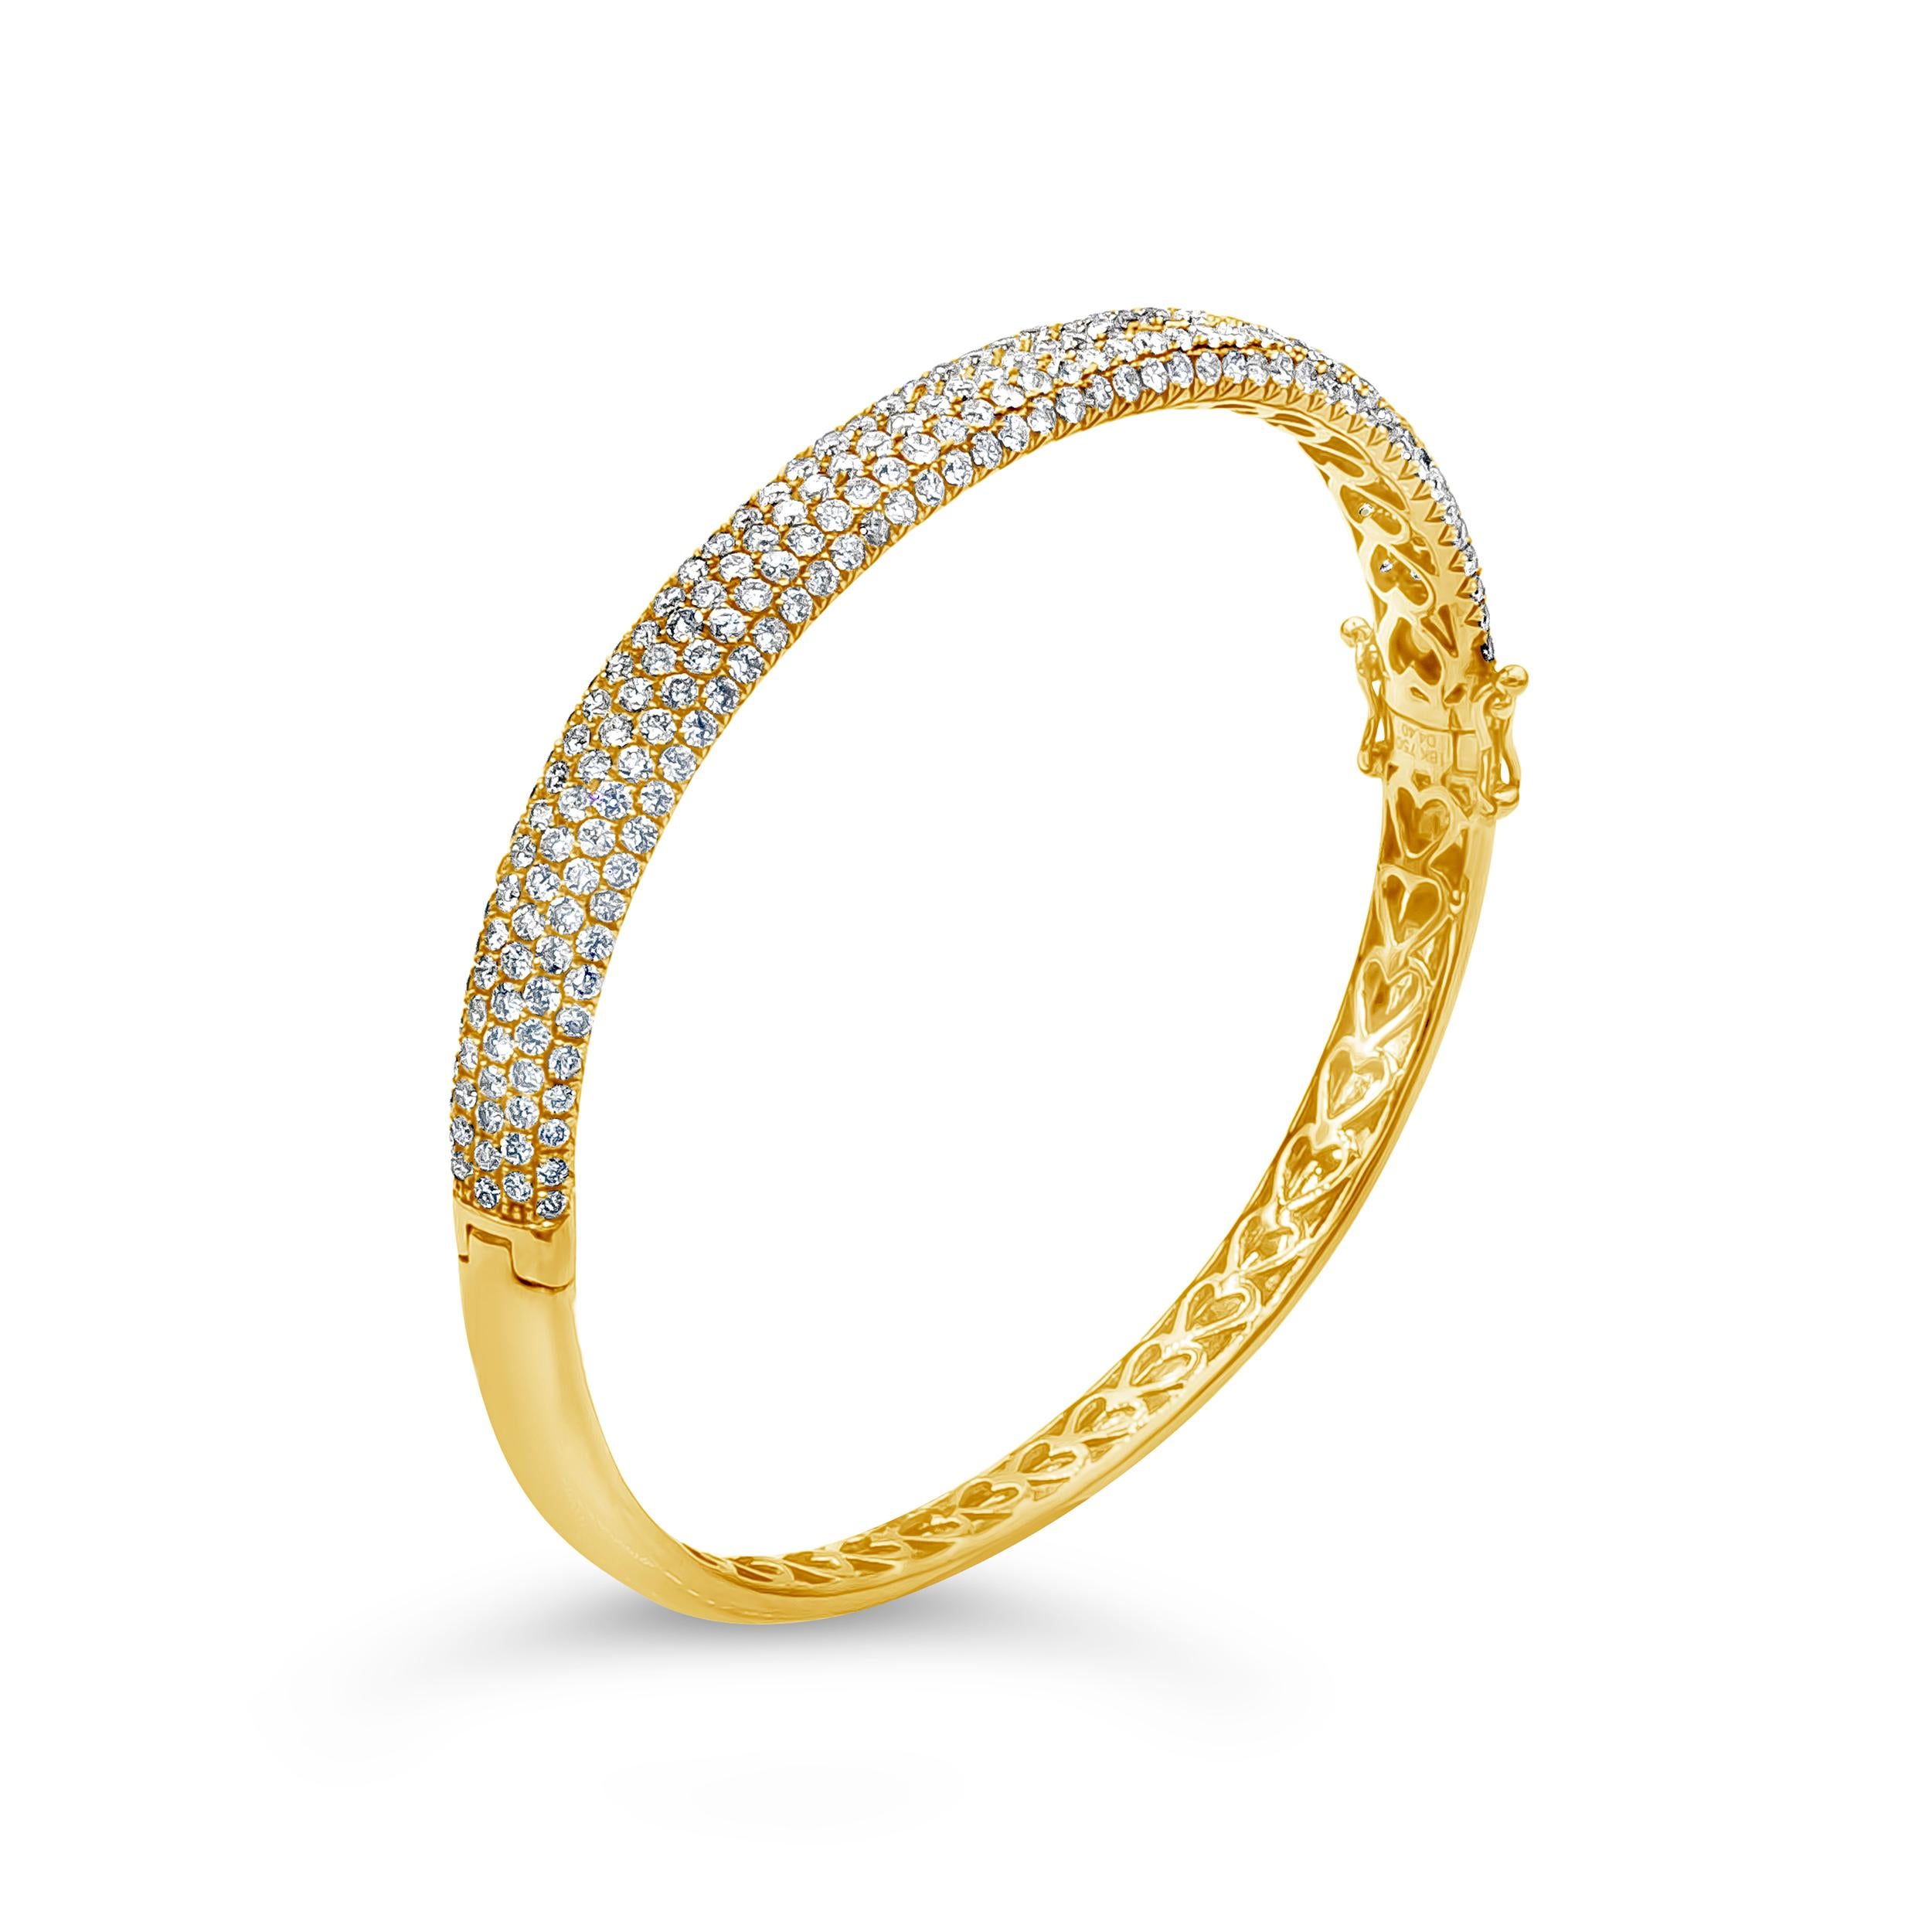 Ce bracelet concave est serti de 250 diamants ronds de taille brillant. Les diamants pèsent 4.40 carat au total. Fabriqué en or jaune 18 carats.

Roman Malakov est une maison sur mesure, spécialisée dans la création de tout ce que vous pouvez